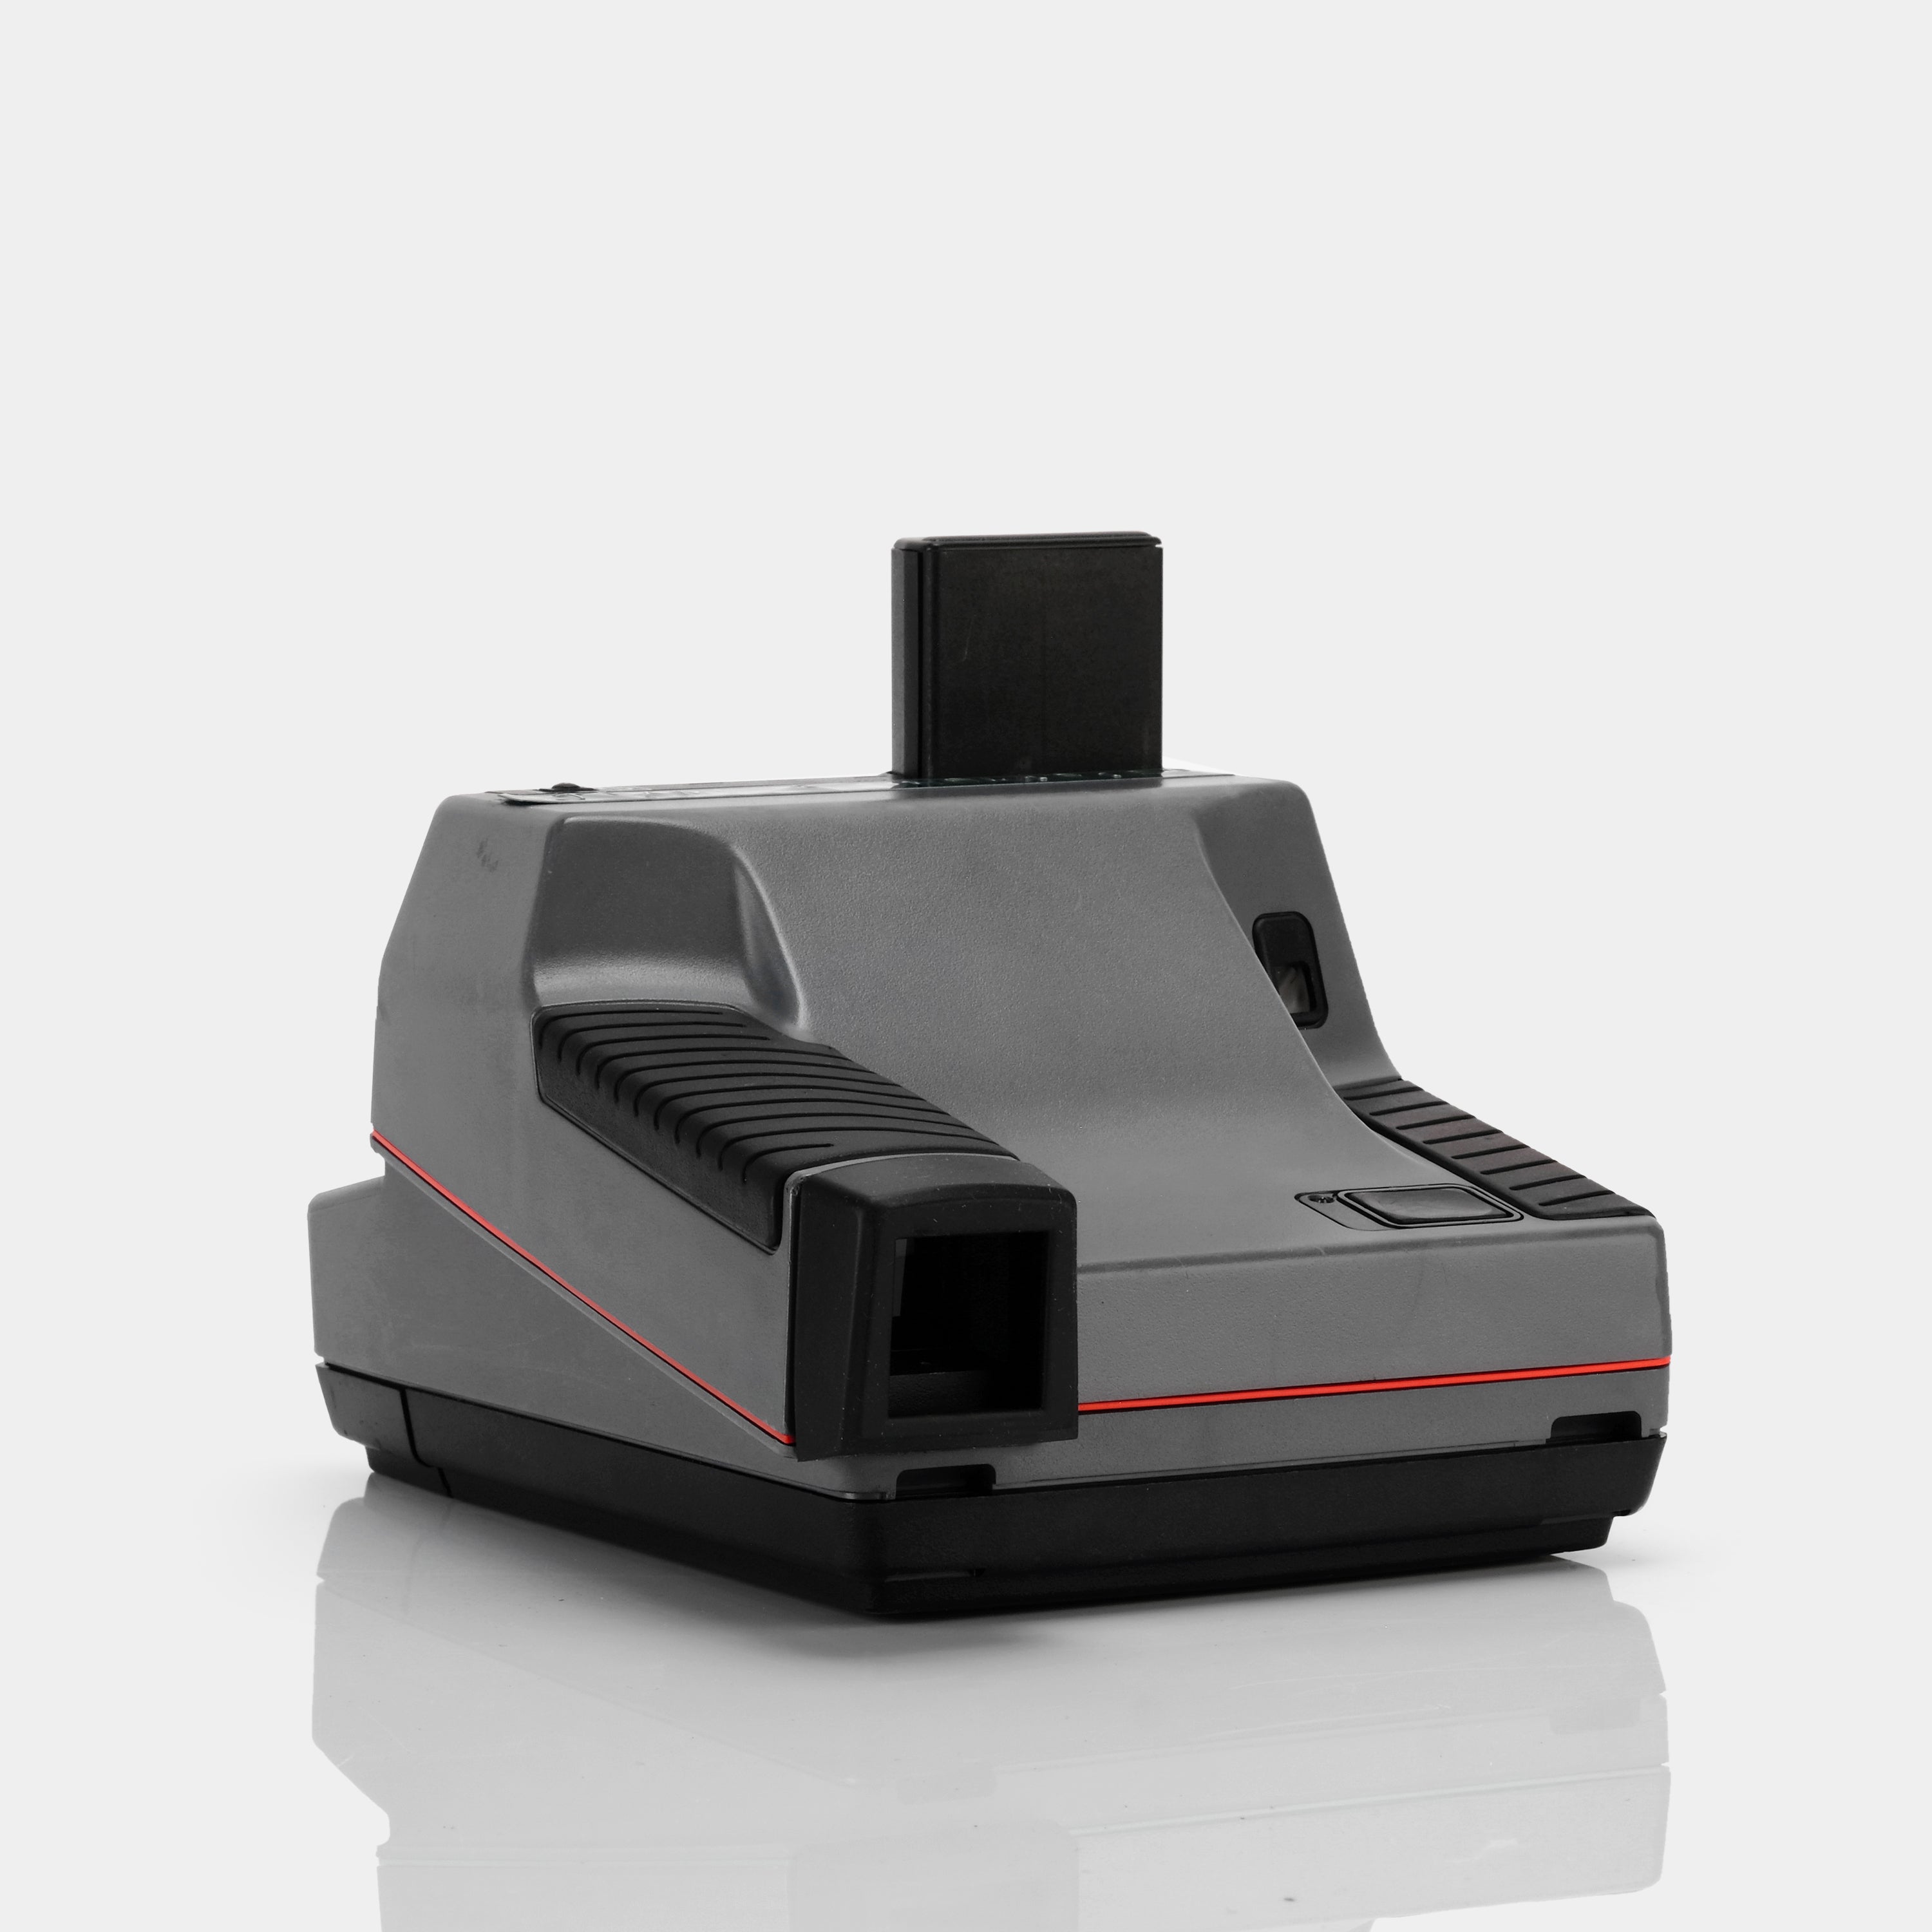 Polaroid 600 Impulse Autofocus Grey Homicide Squad Instant Film Camera